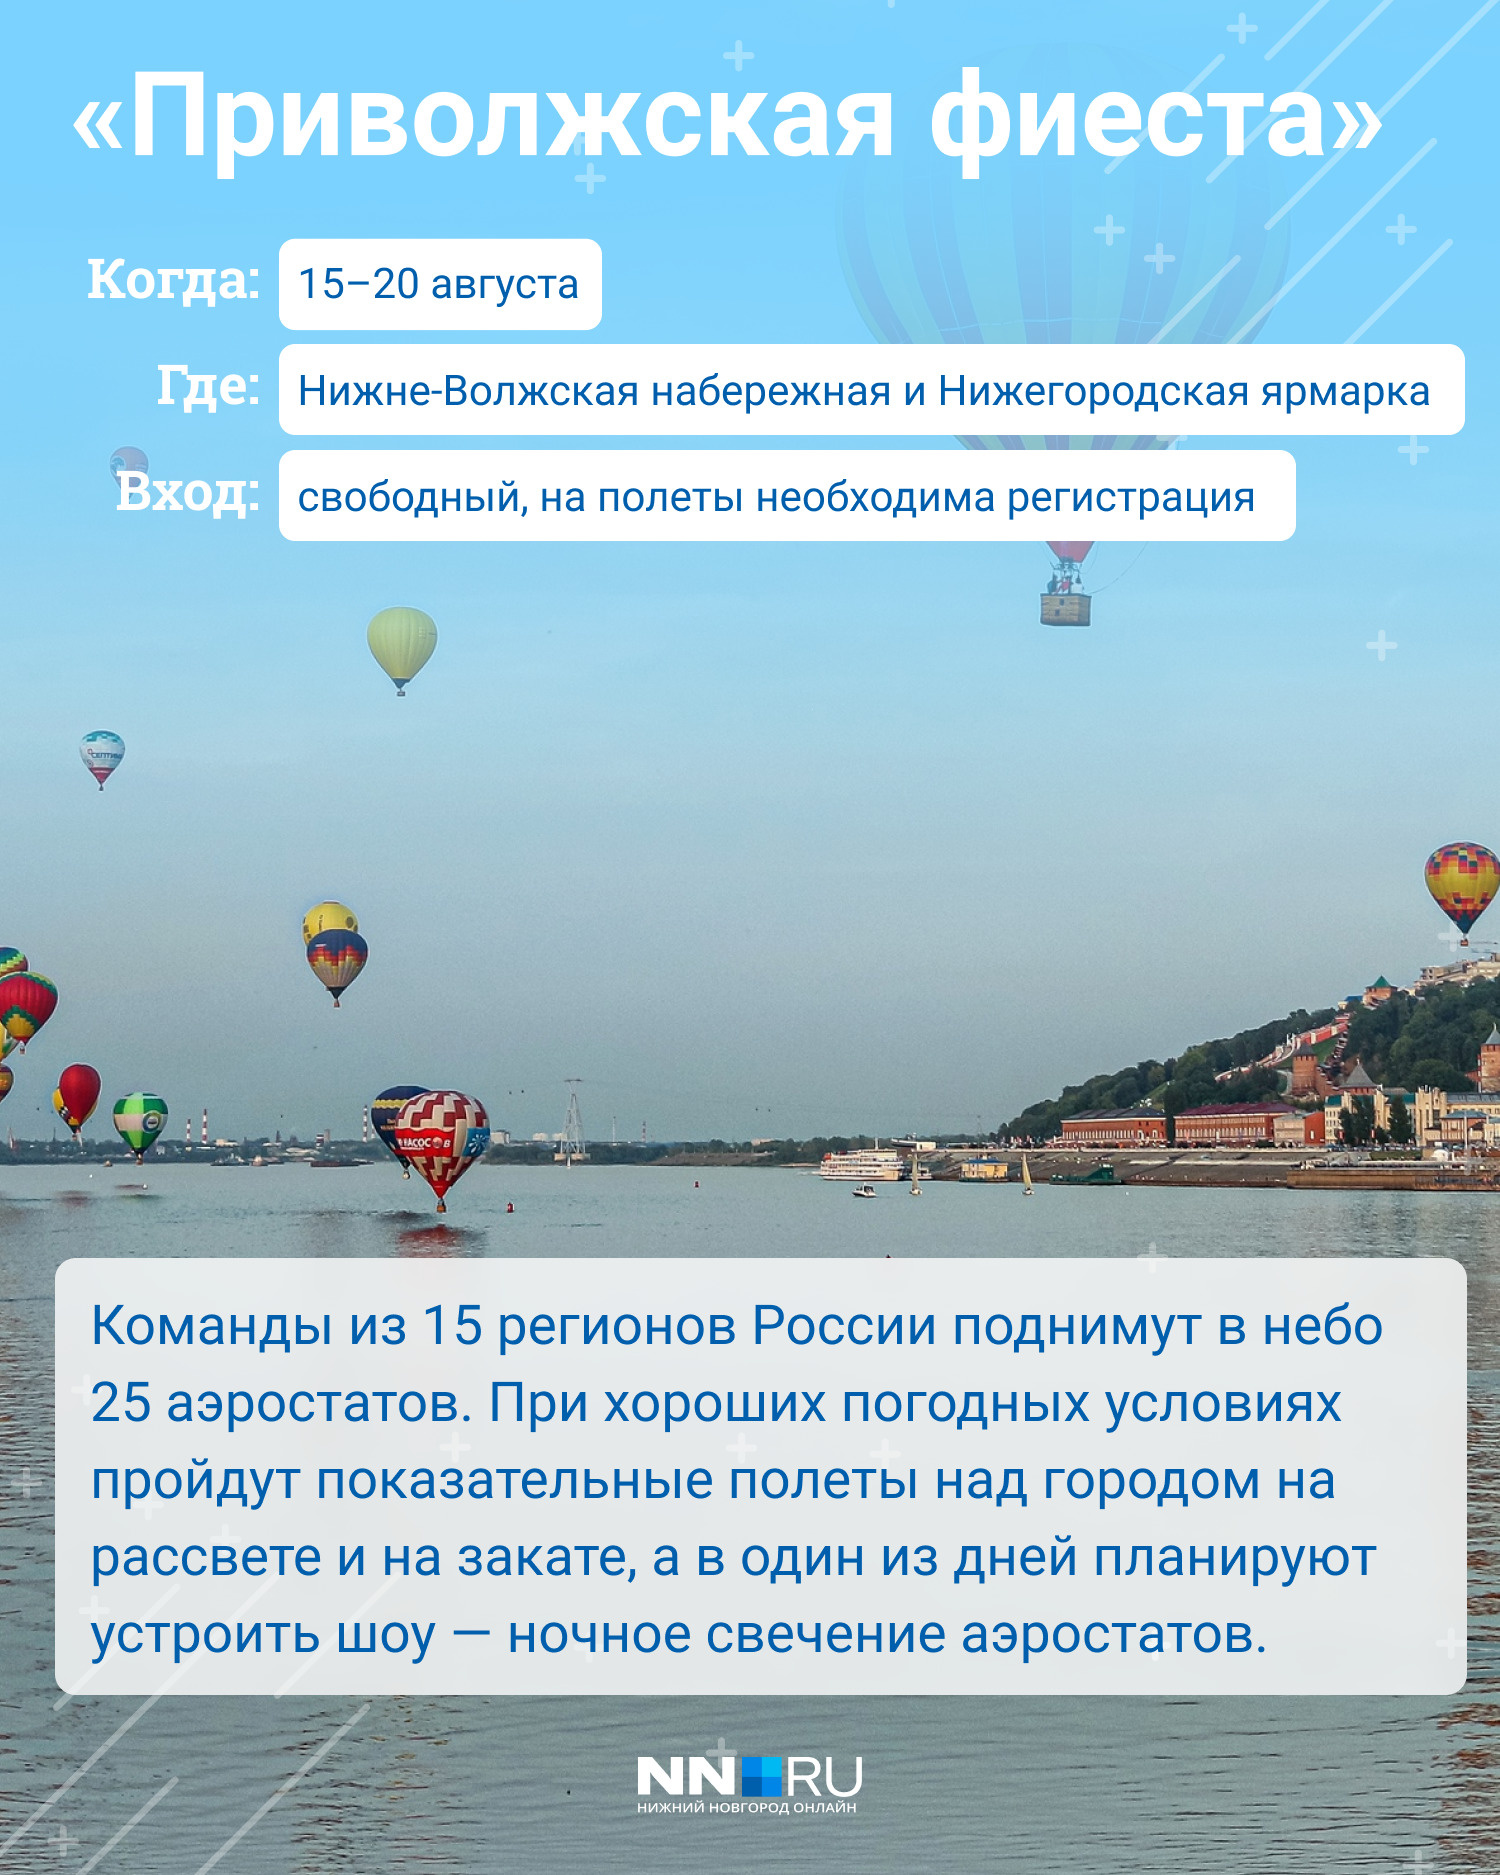 О том, как прошел первый день фестиваля аэростатов в Нижнем Новгороде, читайте в <a href="https://www.nn.ru/text/gorod/2021/08/16/70081211/" class="_" target="_blank">нашем материале</a>